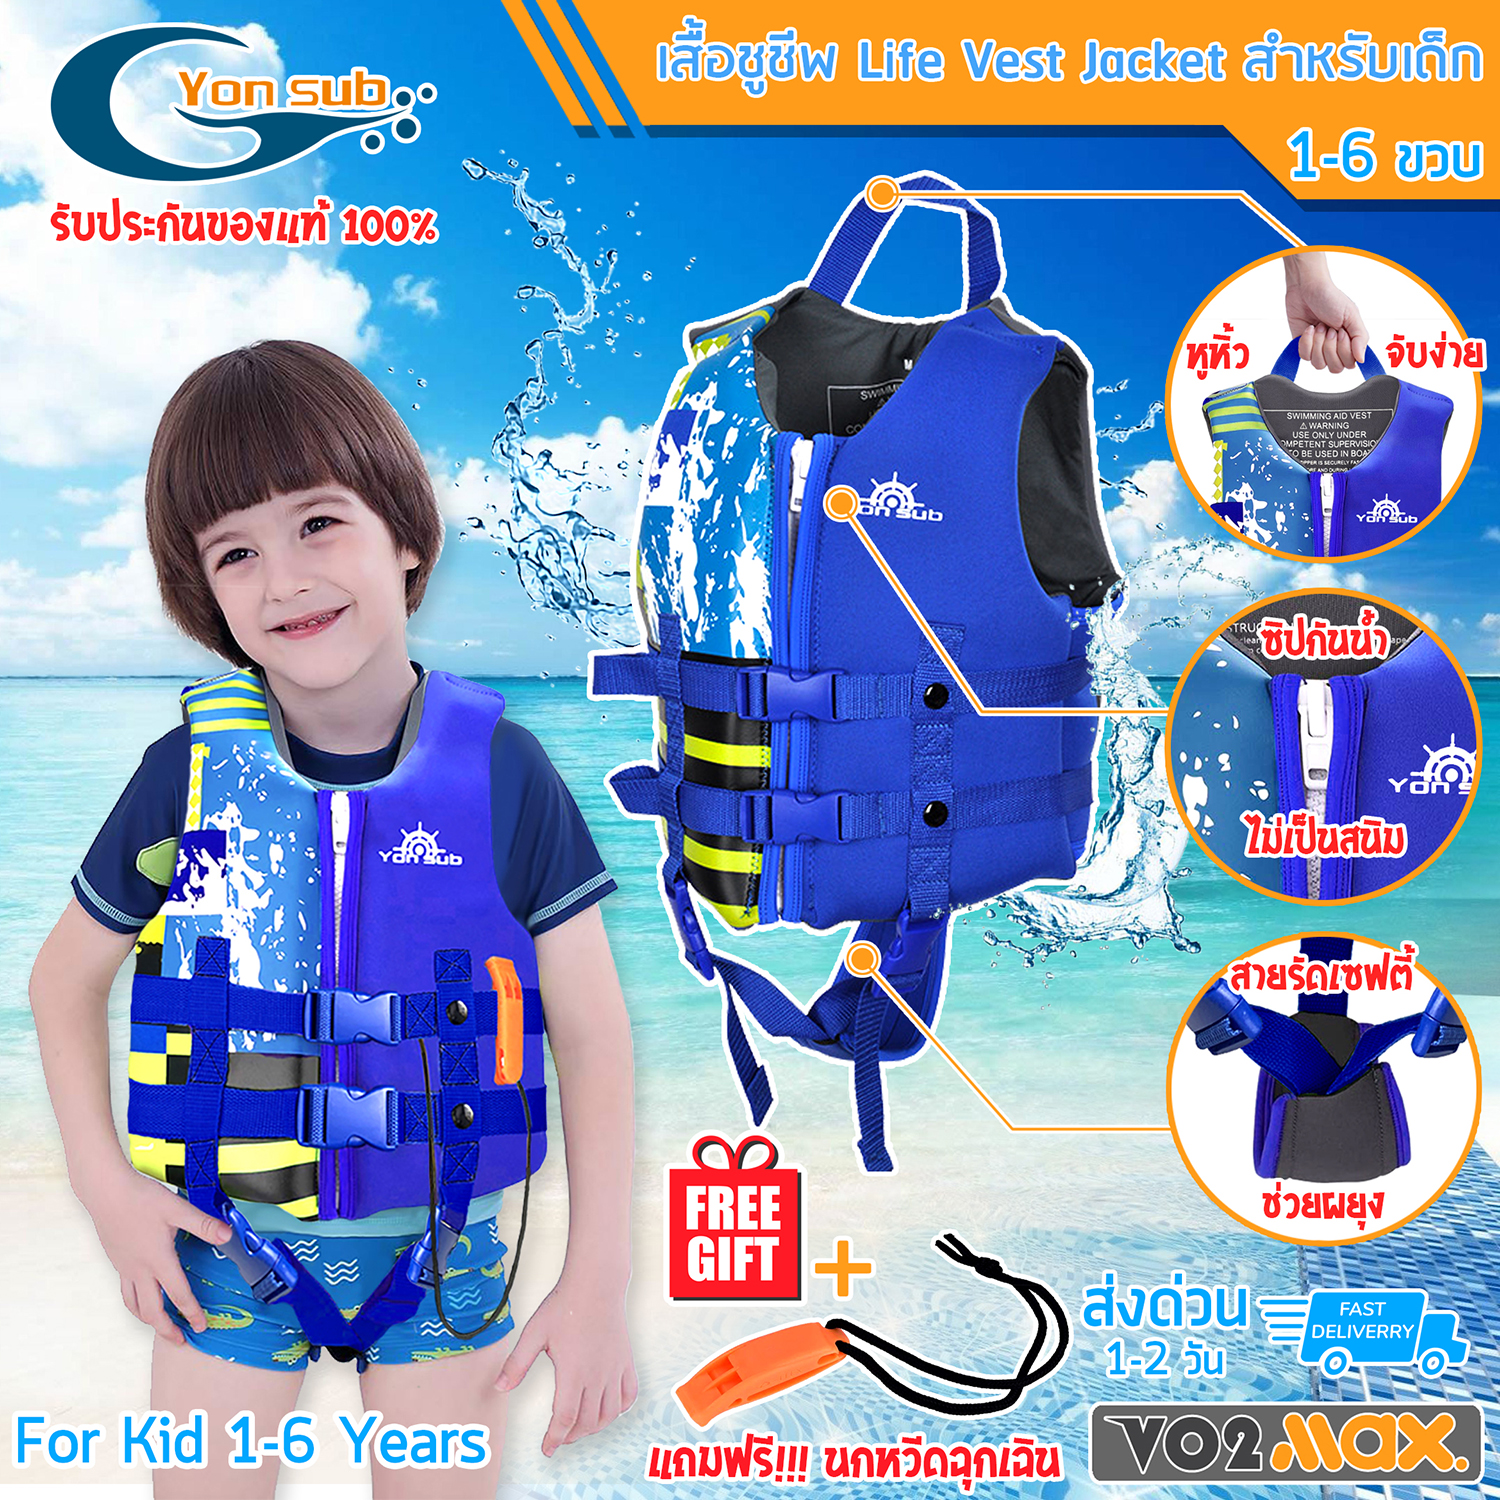 Yon Sub เสื้อชูชีพเด็ก Life Vest Jacket for Kids เสื้อชูชีพว่ายน้ำเด็ก พยุงตัว สำหรับเด็ก น้ำหนัก 10-21 Kg อายุ 1-6 ขวบ แถมฟรี นกหวีดฉุกเฉิน